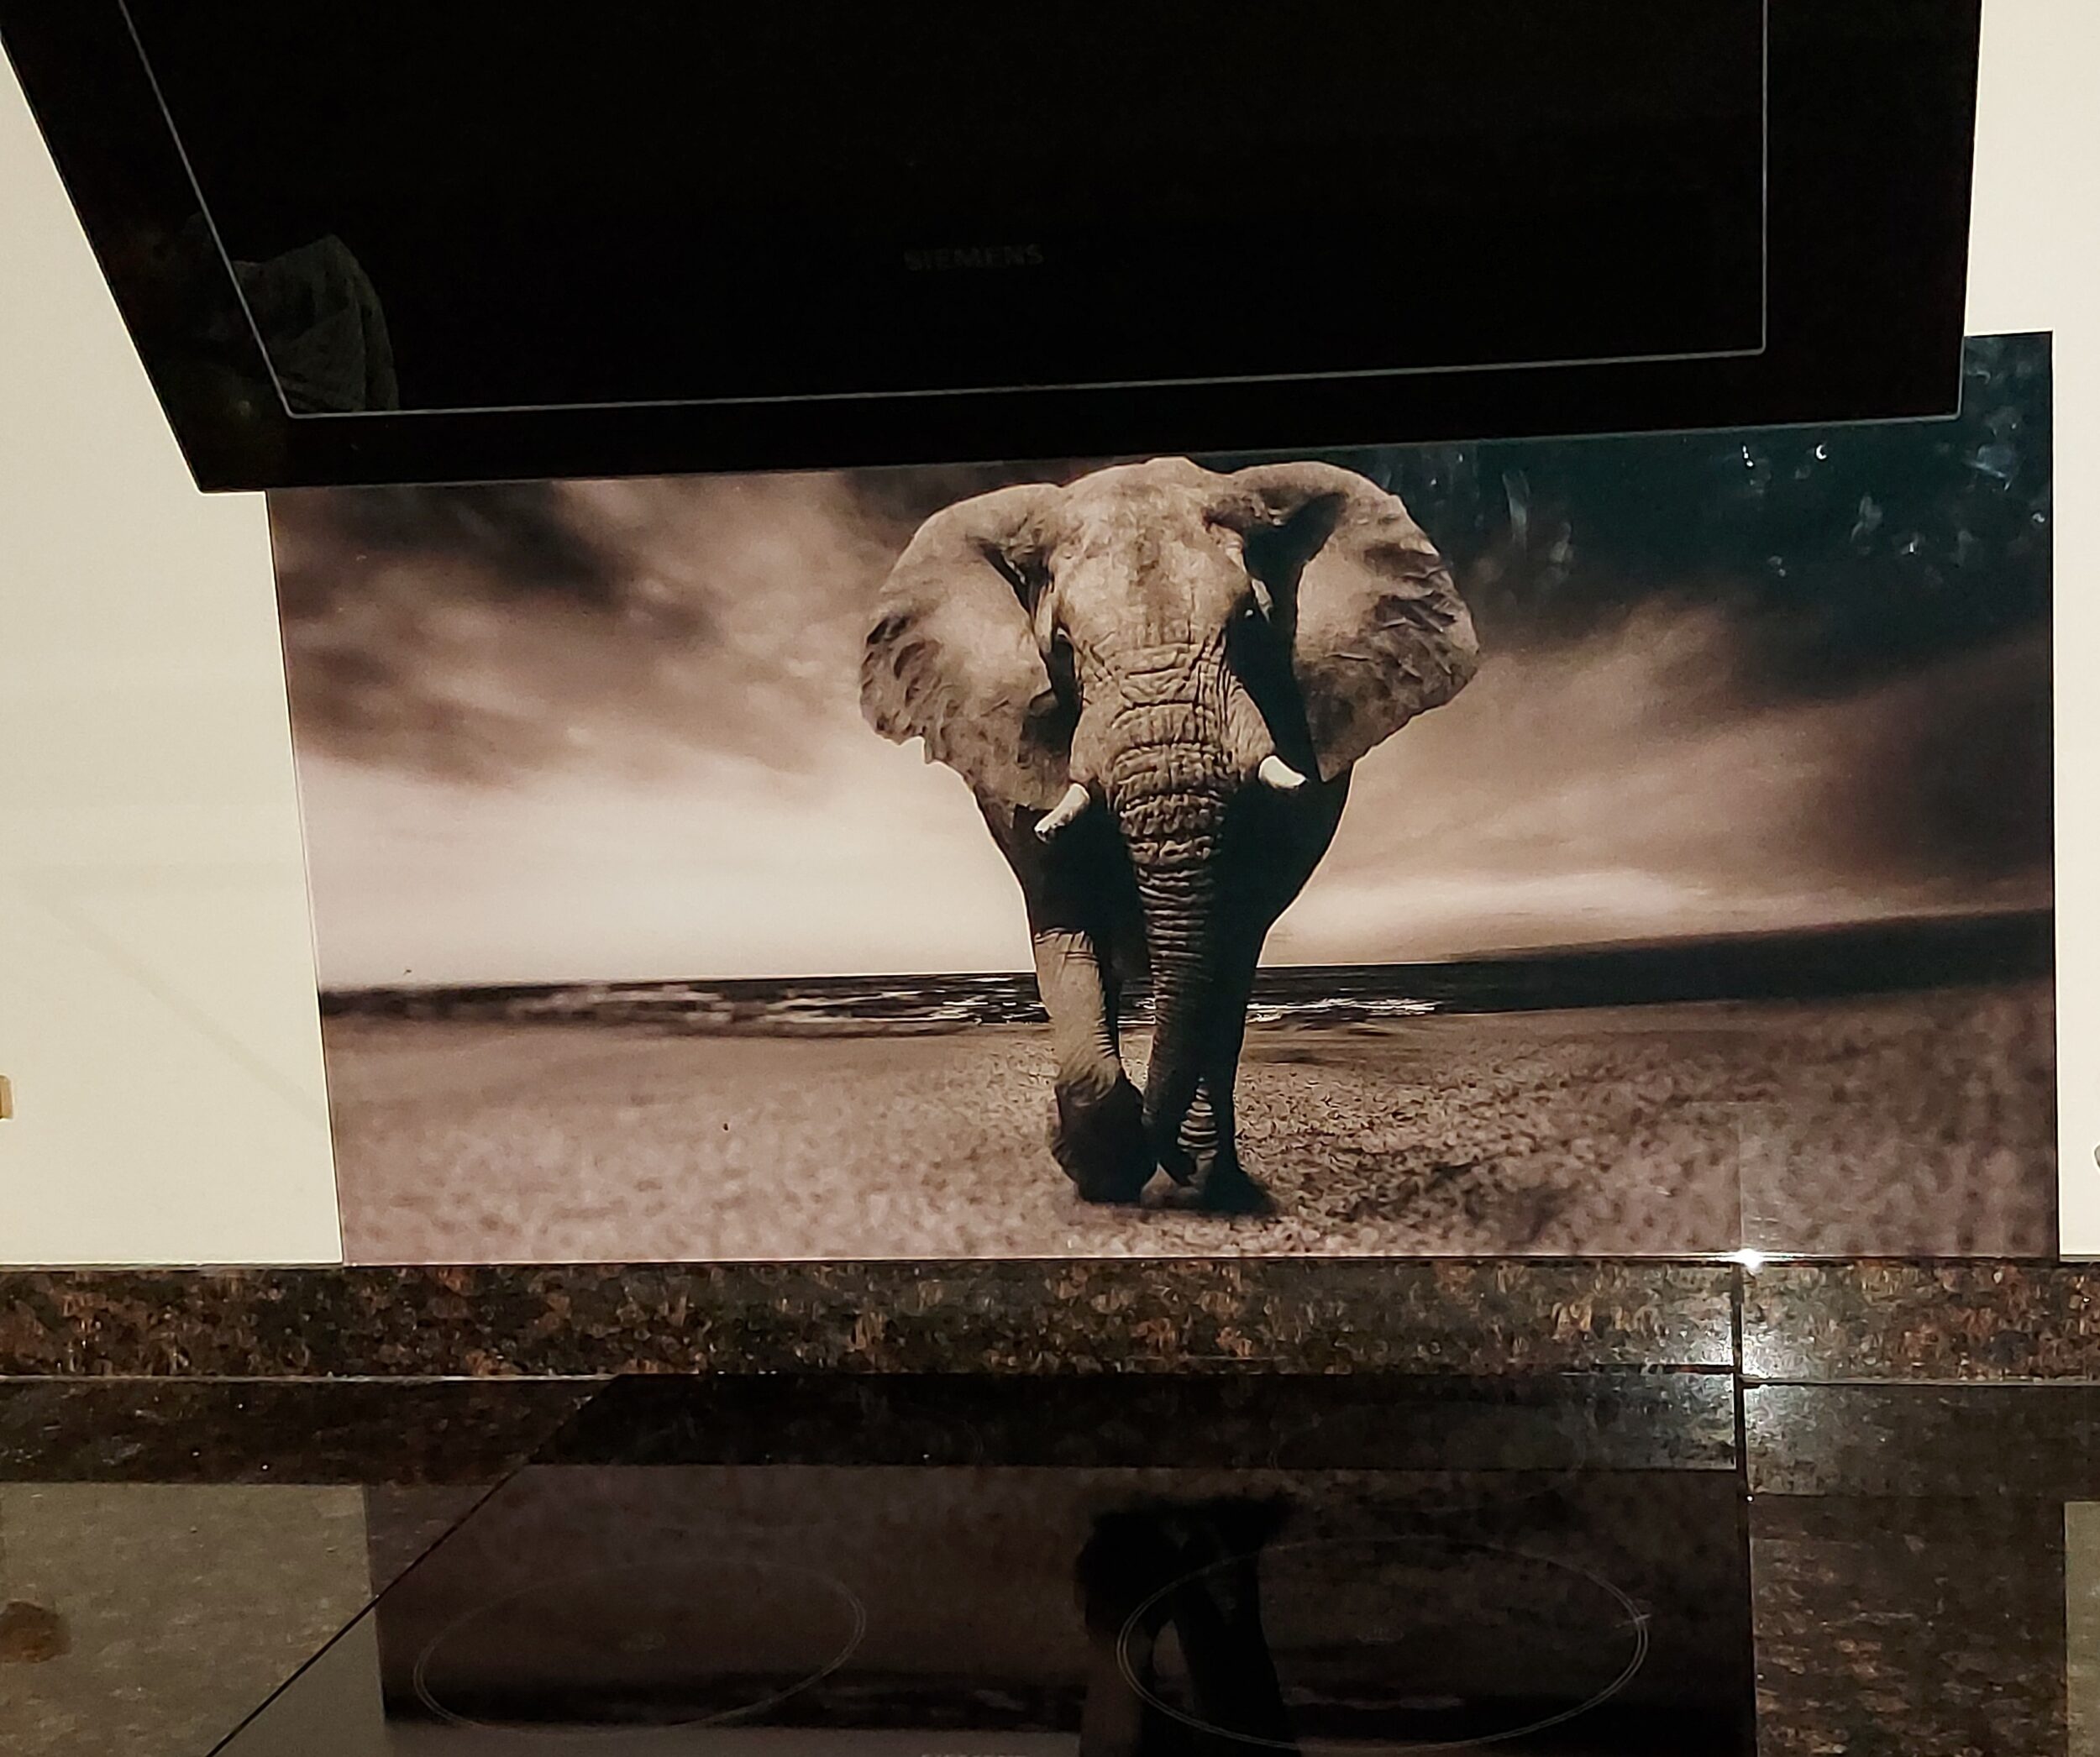 Spatplaat met fantastische olifant in zwart-wit